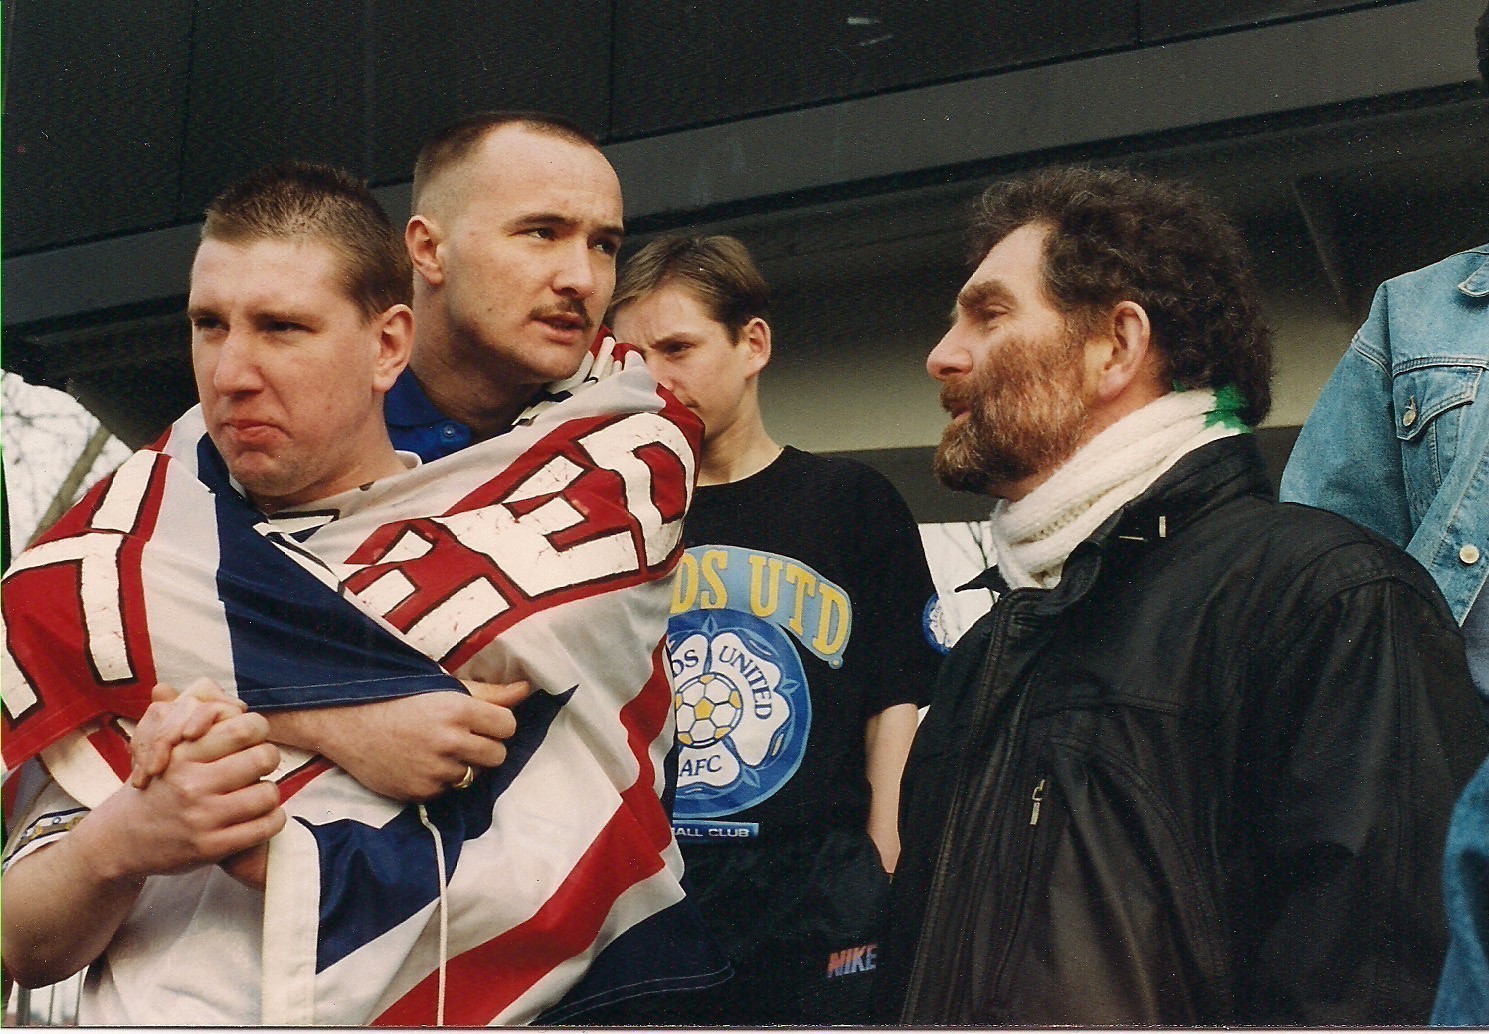 Für Ian Watson eigentlich das schlechthin Böse: der englische Fußballclub Leeds United und dessen Anhänger, hier 1993 in der Ostkurve des Weserstadions. Bildvorlage: Ian Watson 